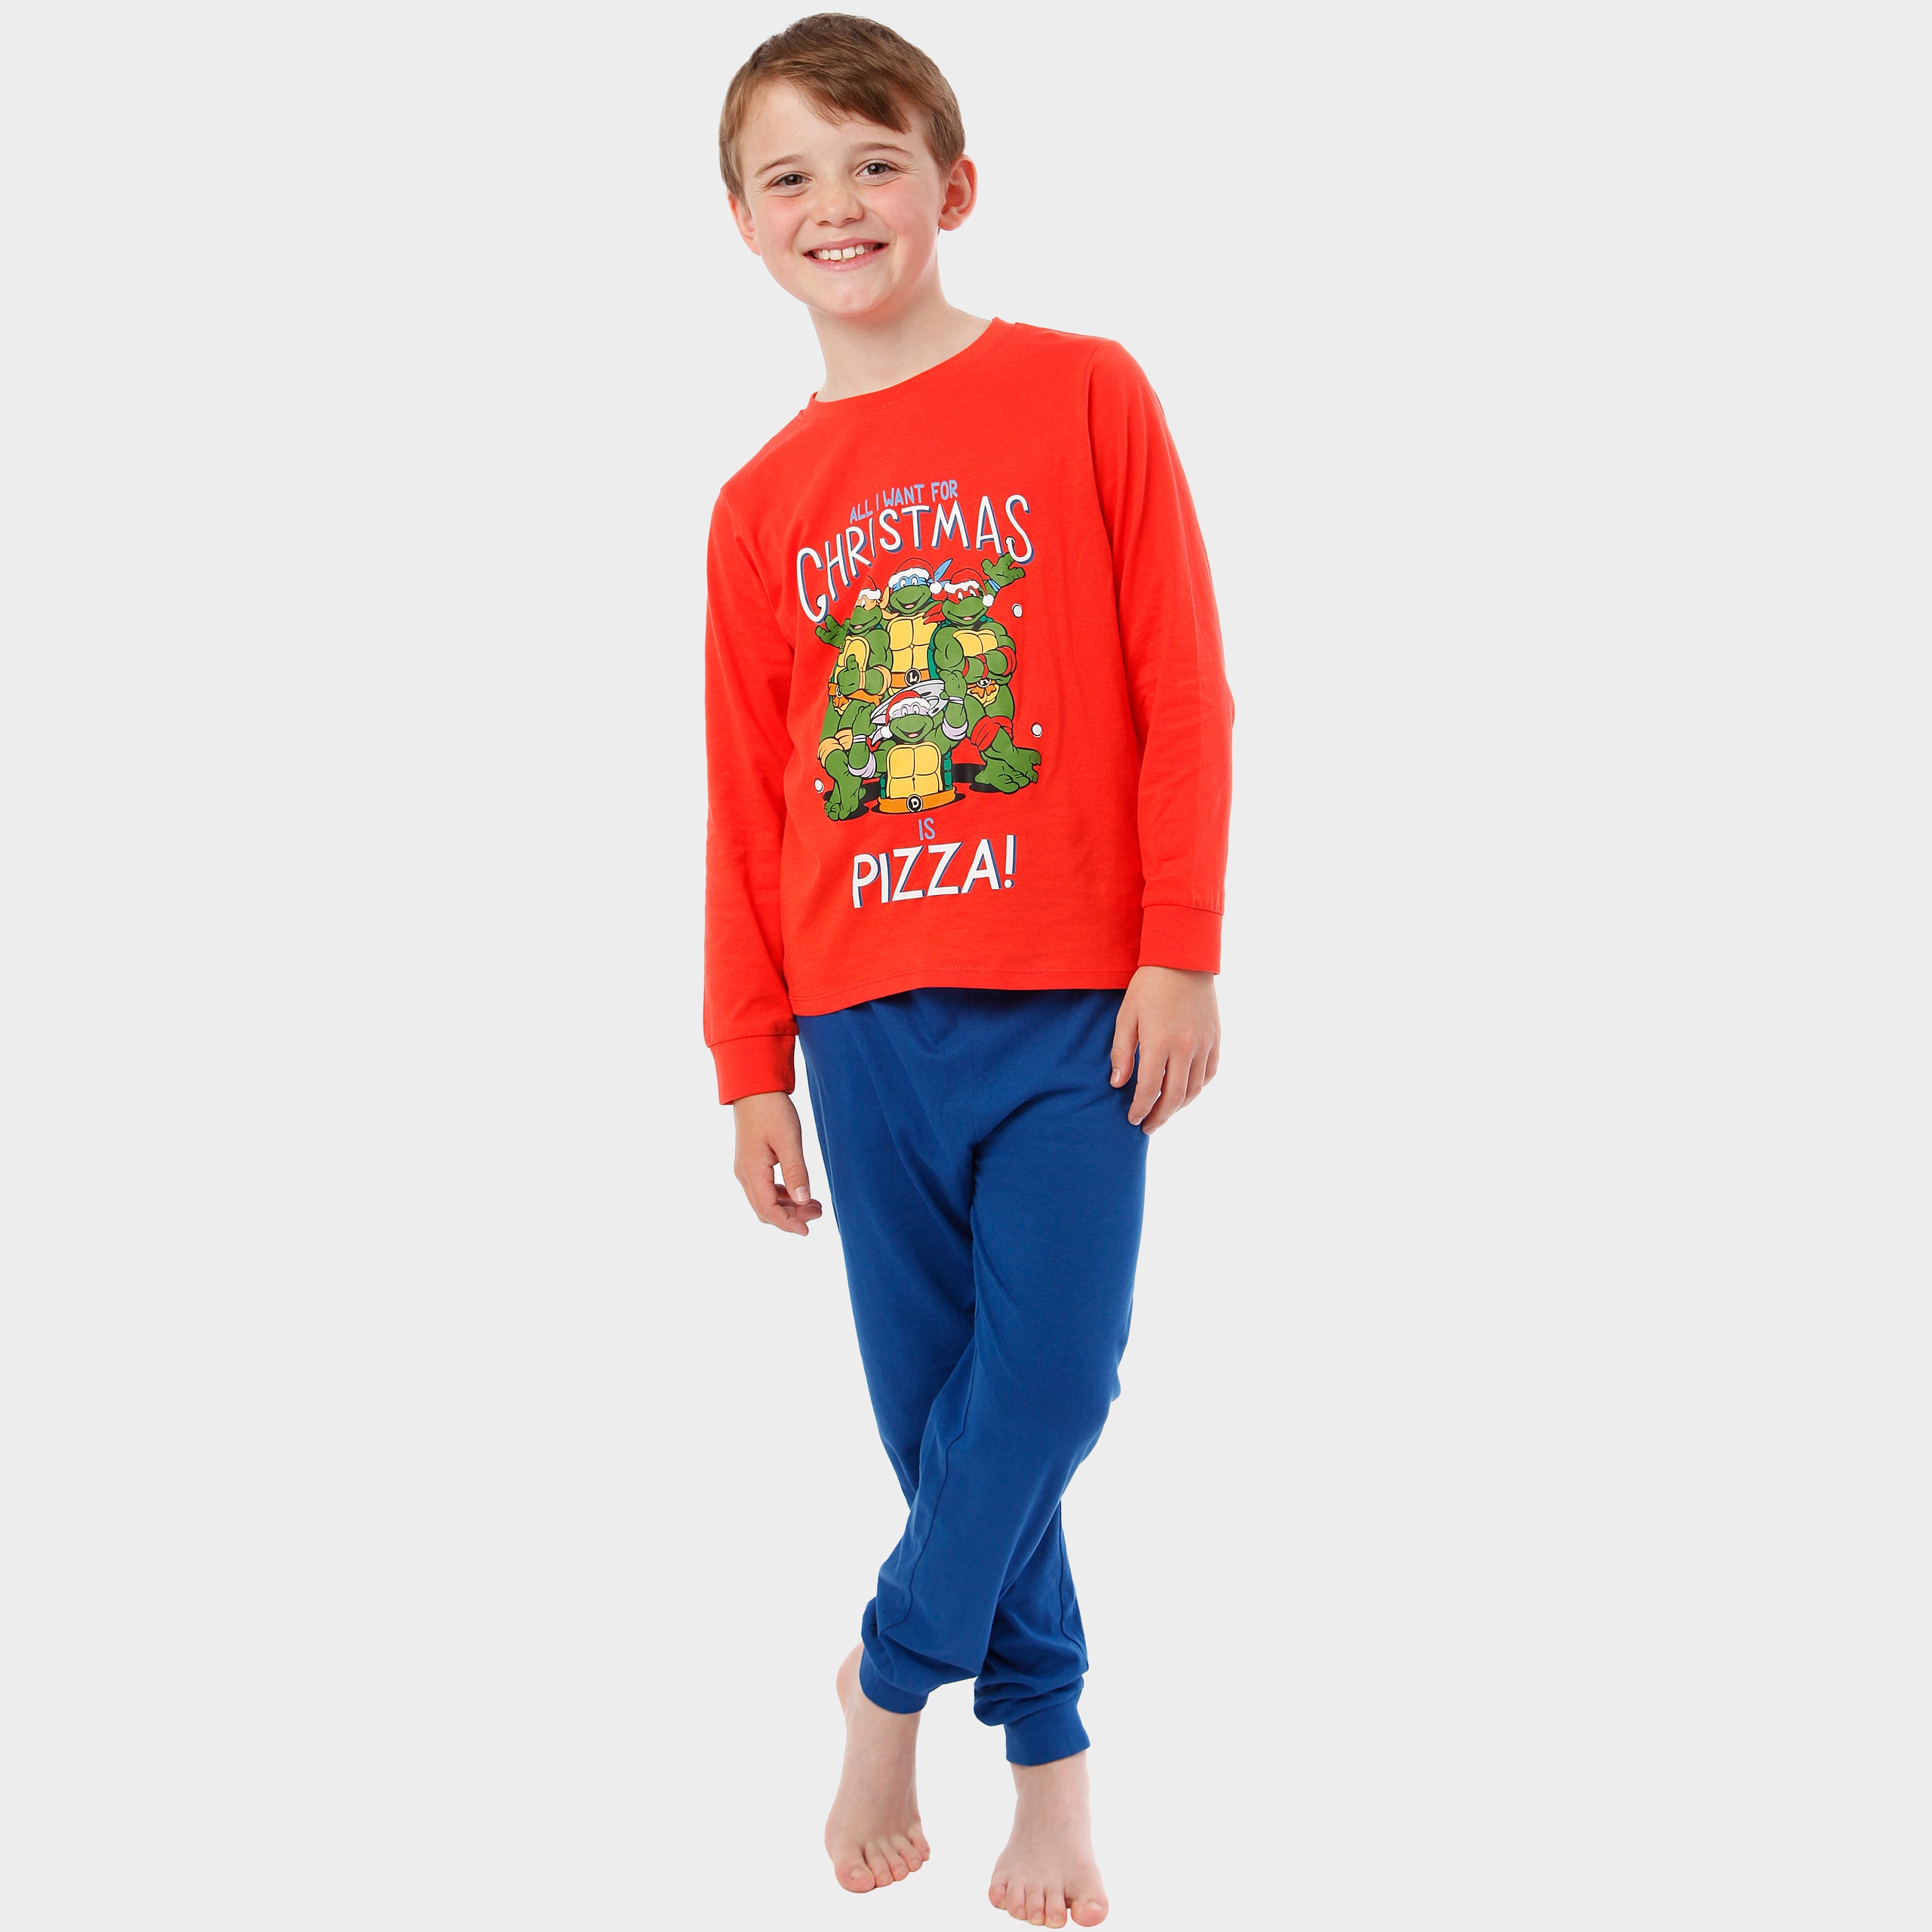 Teenage Mutant Ninja Turtle Pyjamas, Kids